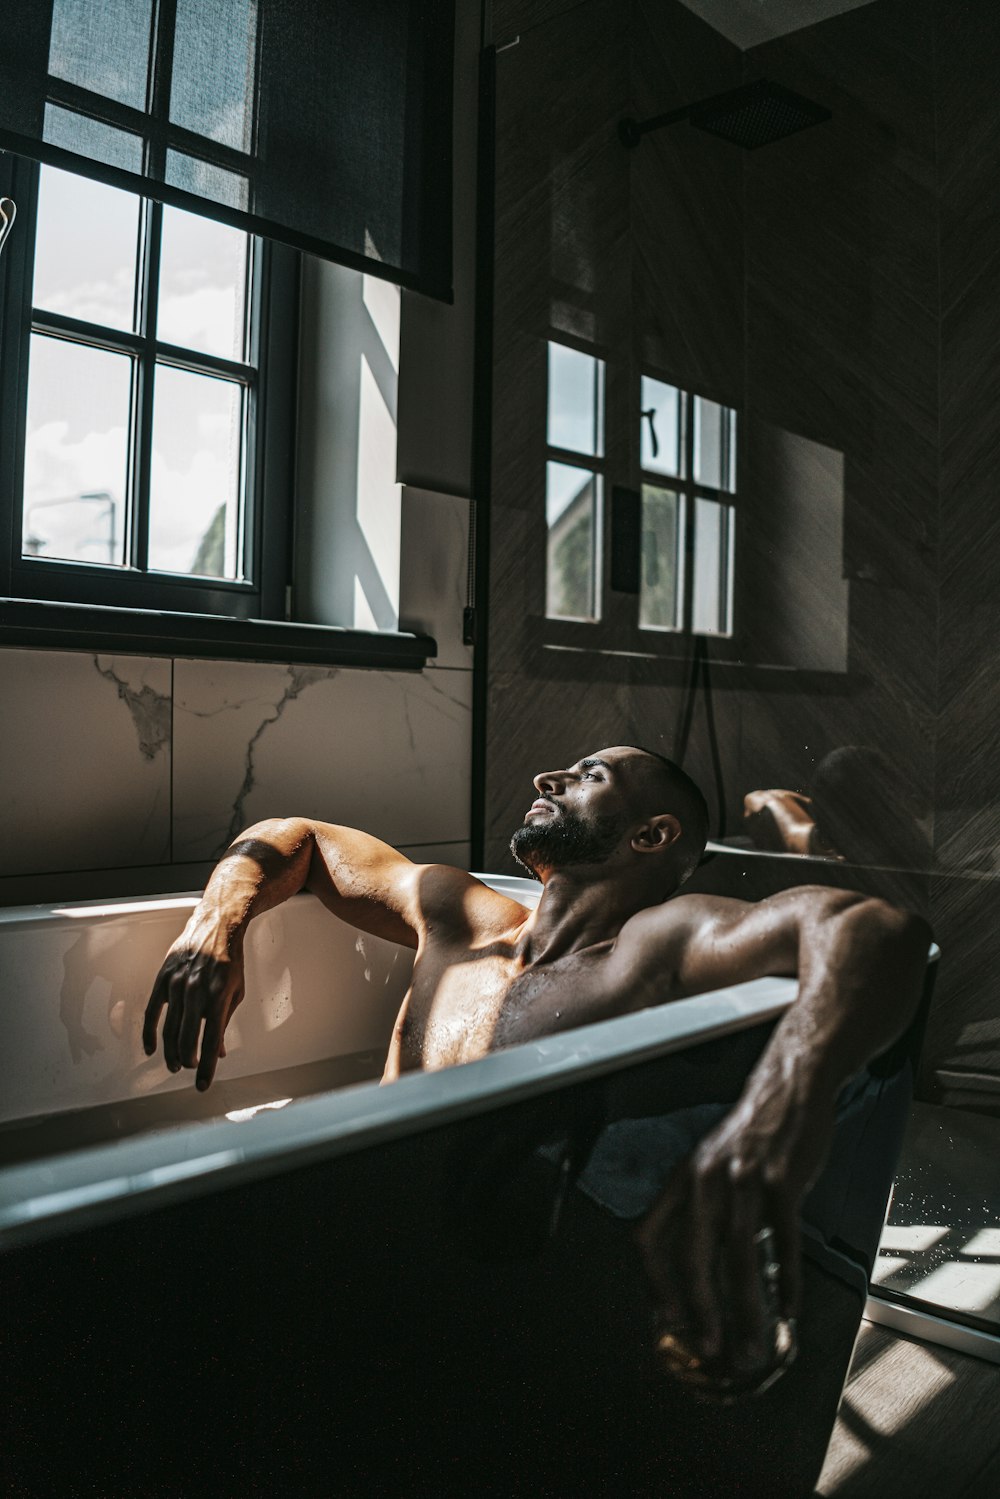 a man is taking a bath in a bathtub